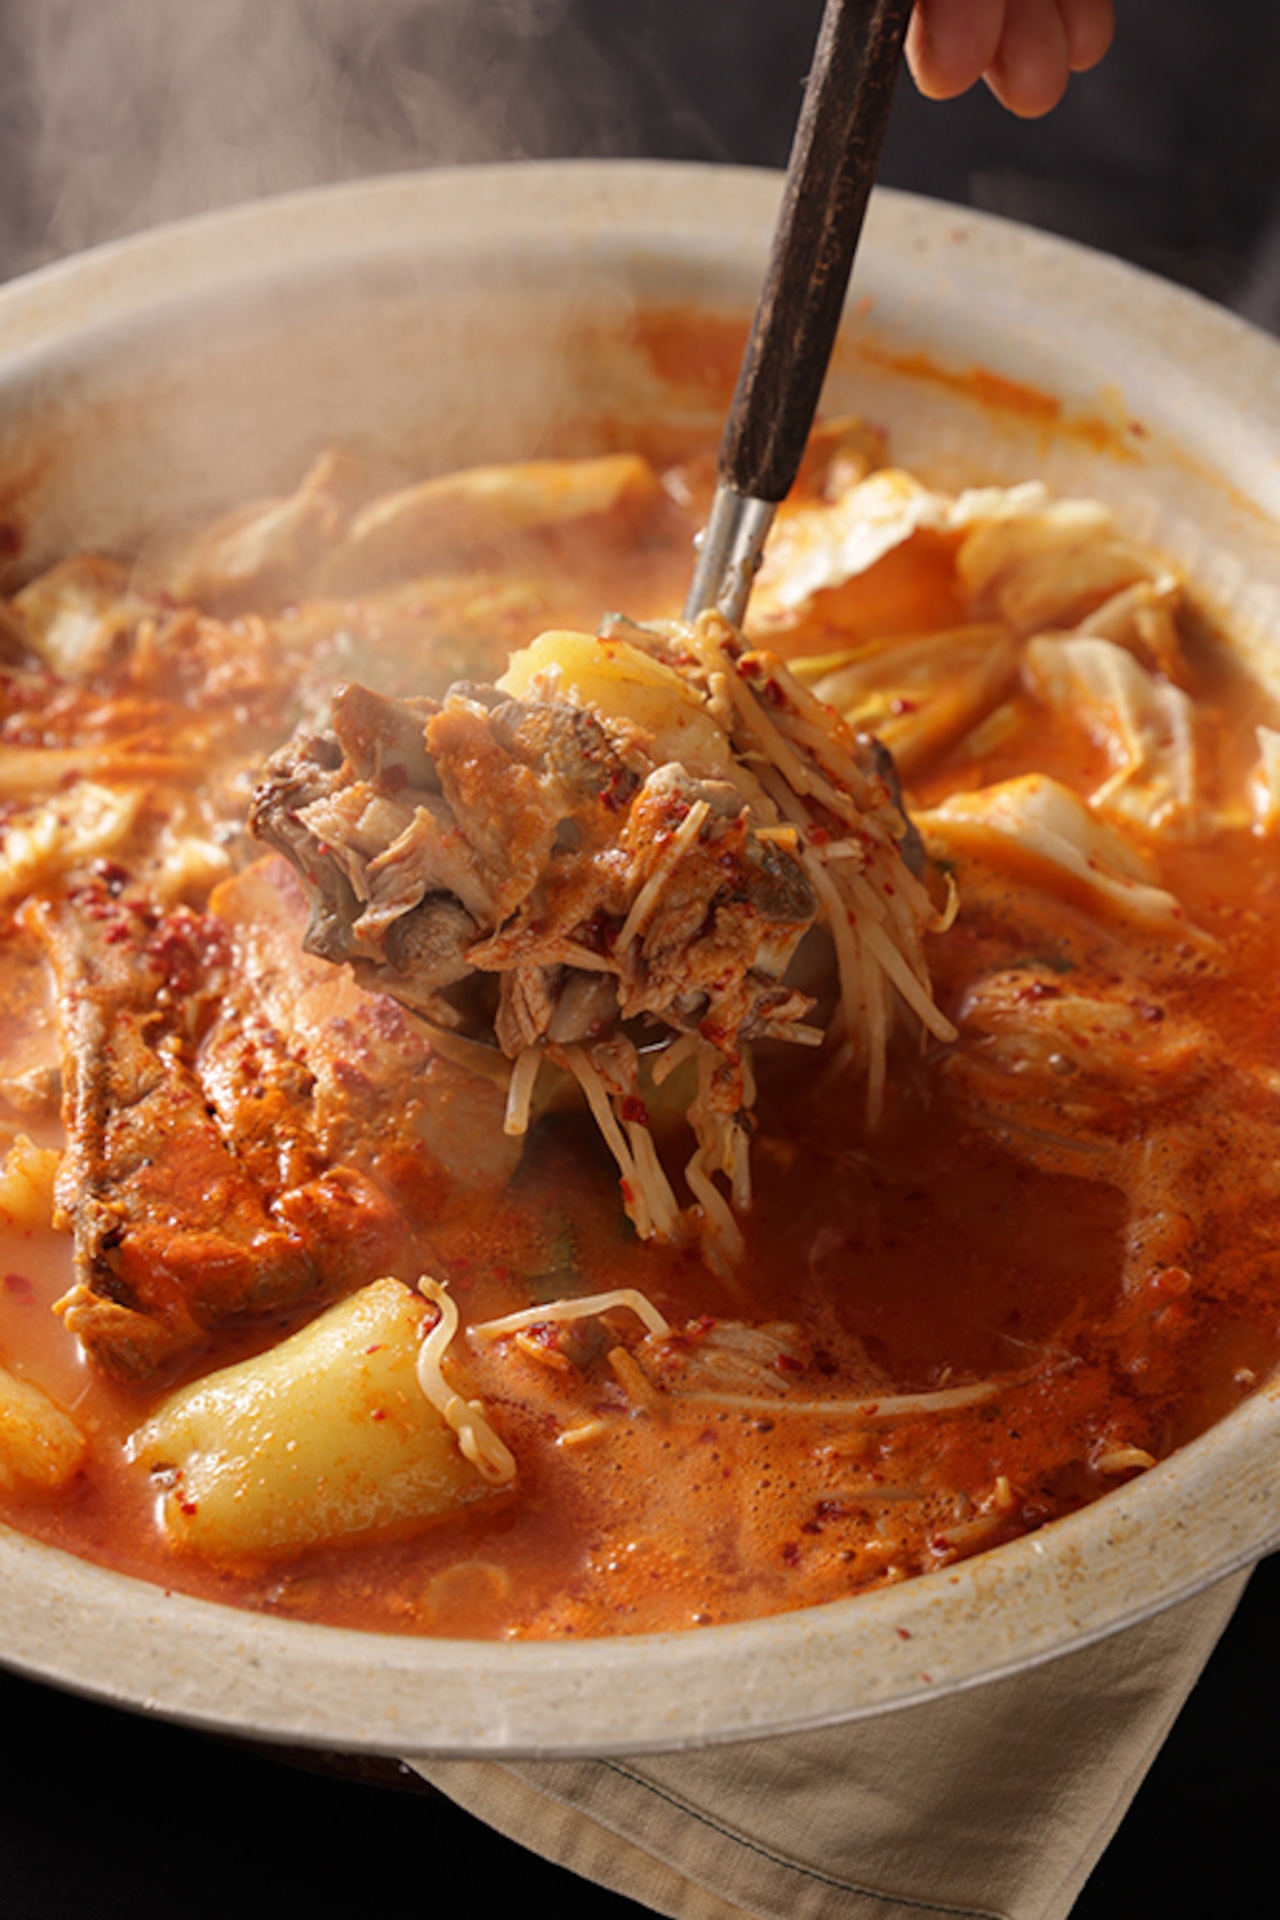 「カムジャタン」豚背骨肉でとった濃厚なスープとじゃが芋を入れた肉じゃが風お鍋1人分